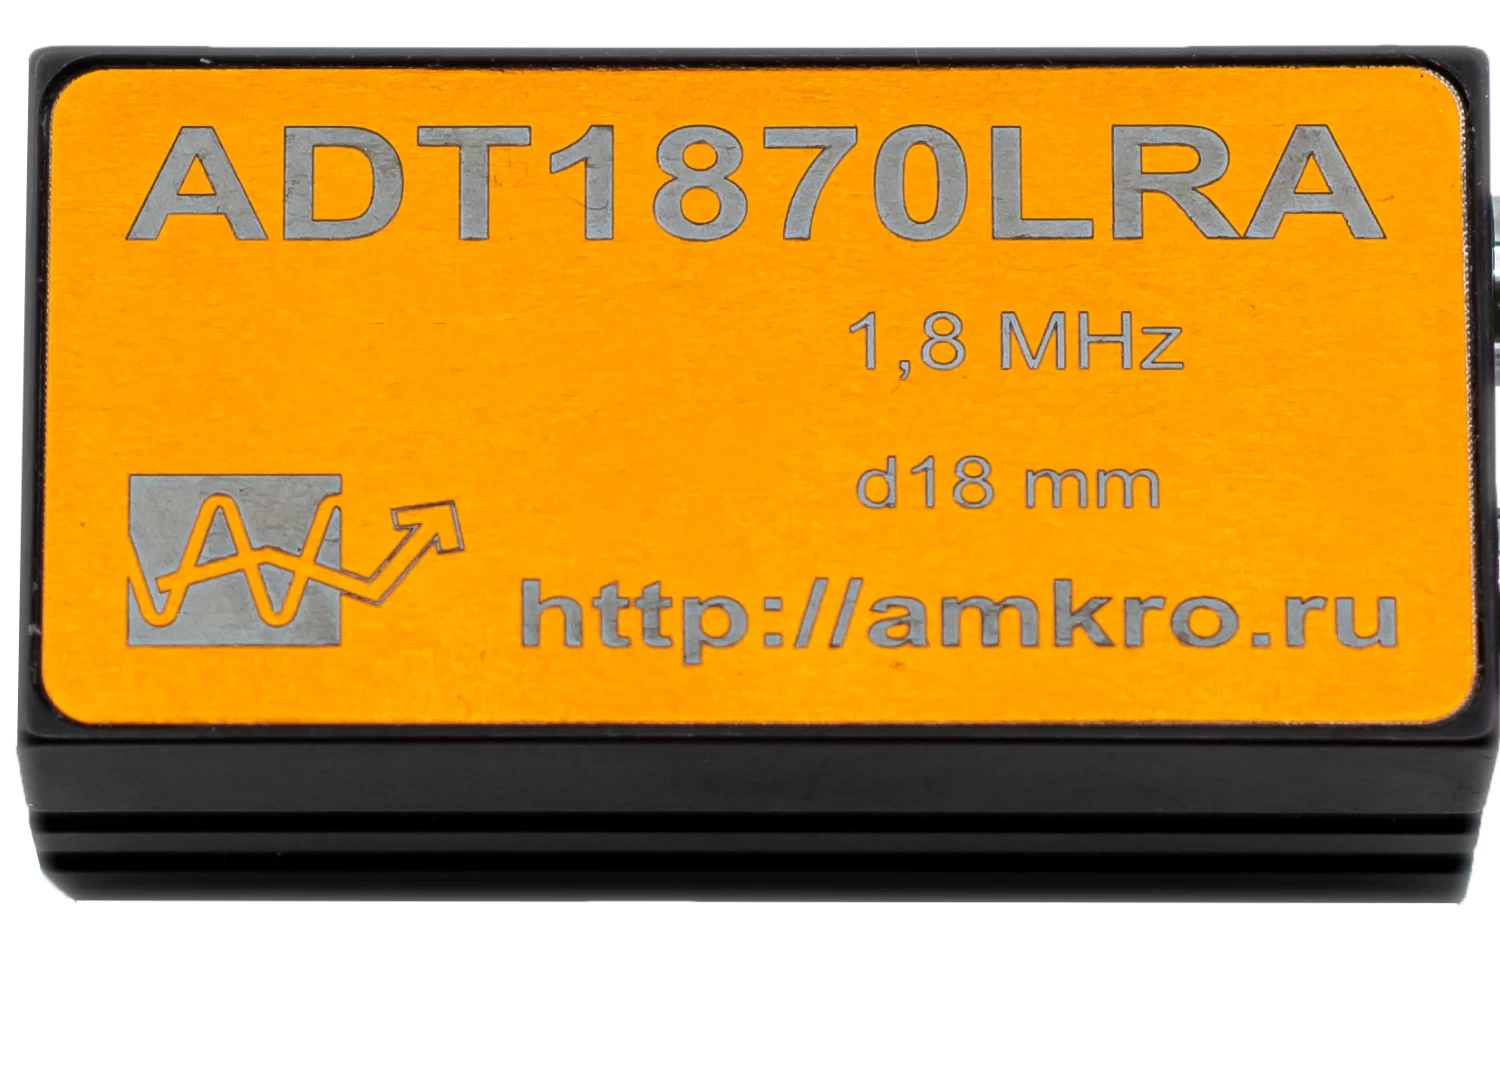 ADT1870LRA (аналог ПГЦ-91) наклонный р/с тандемный преобразователь 1,8 МГц - 3